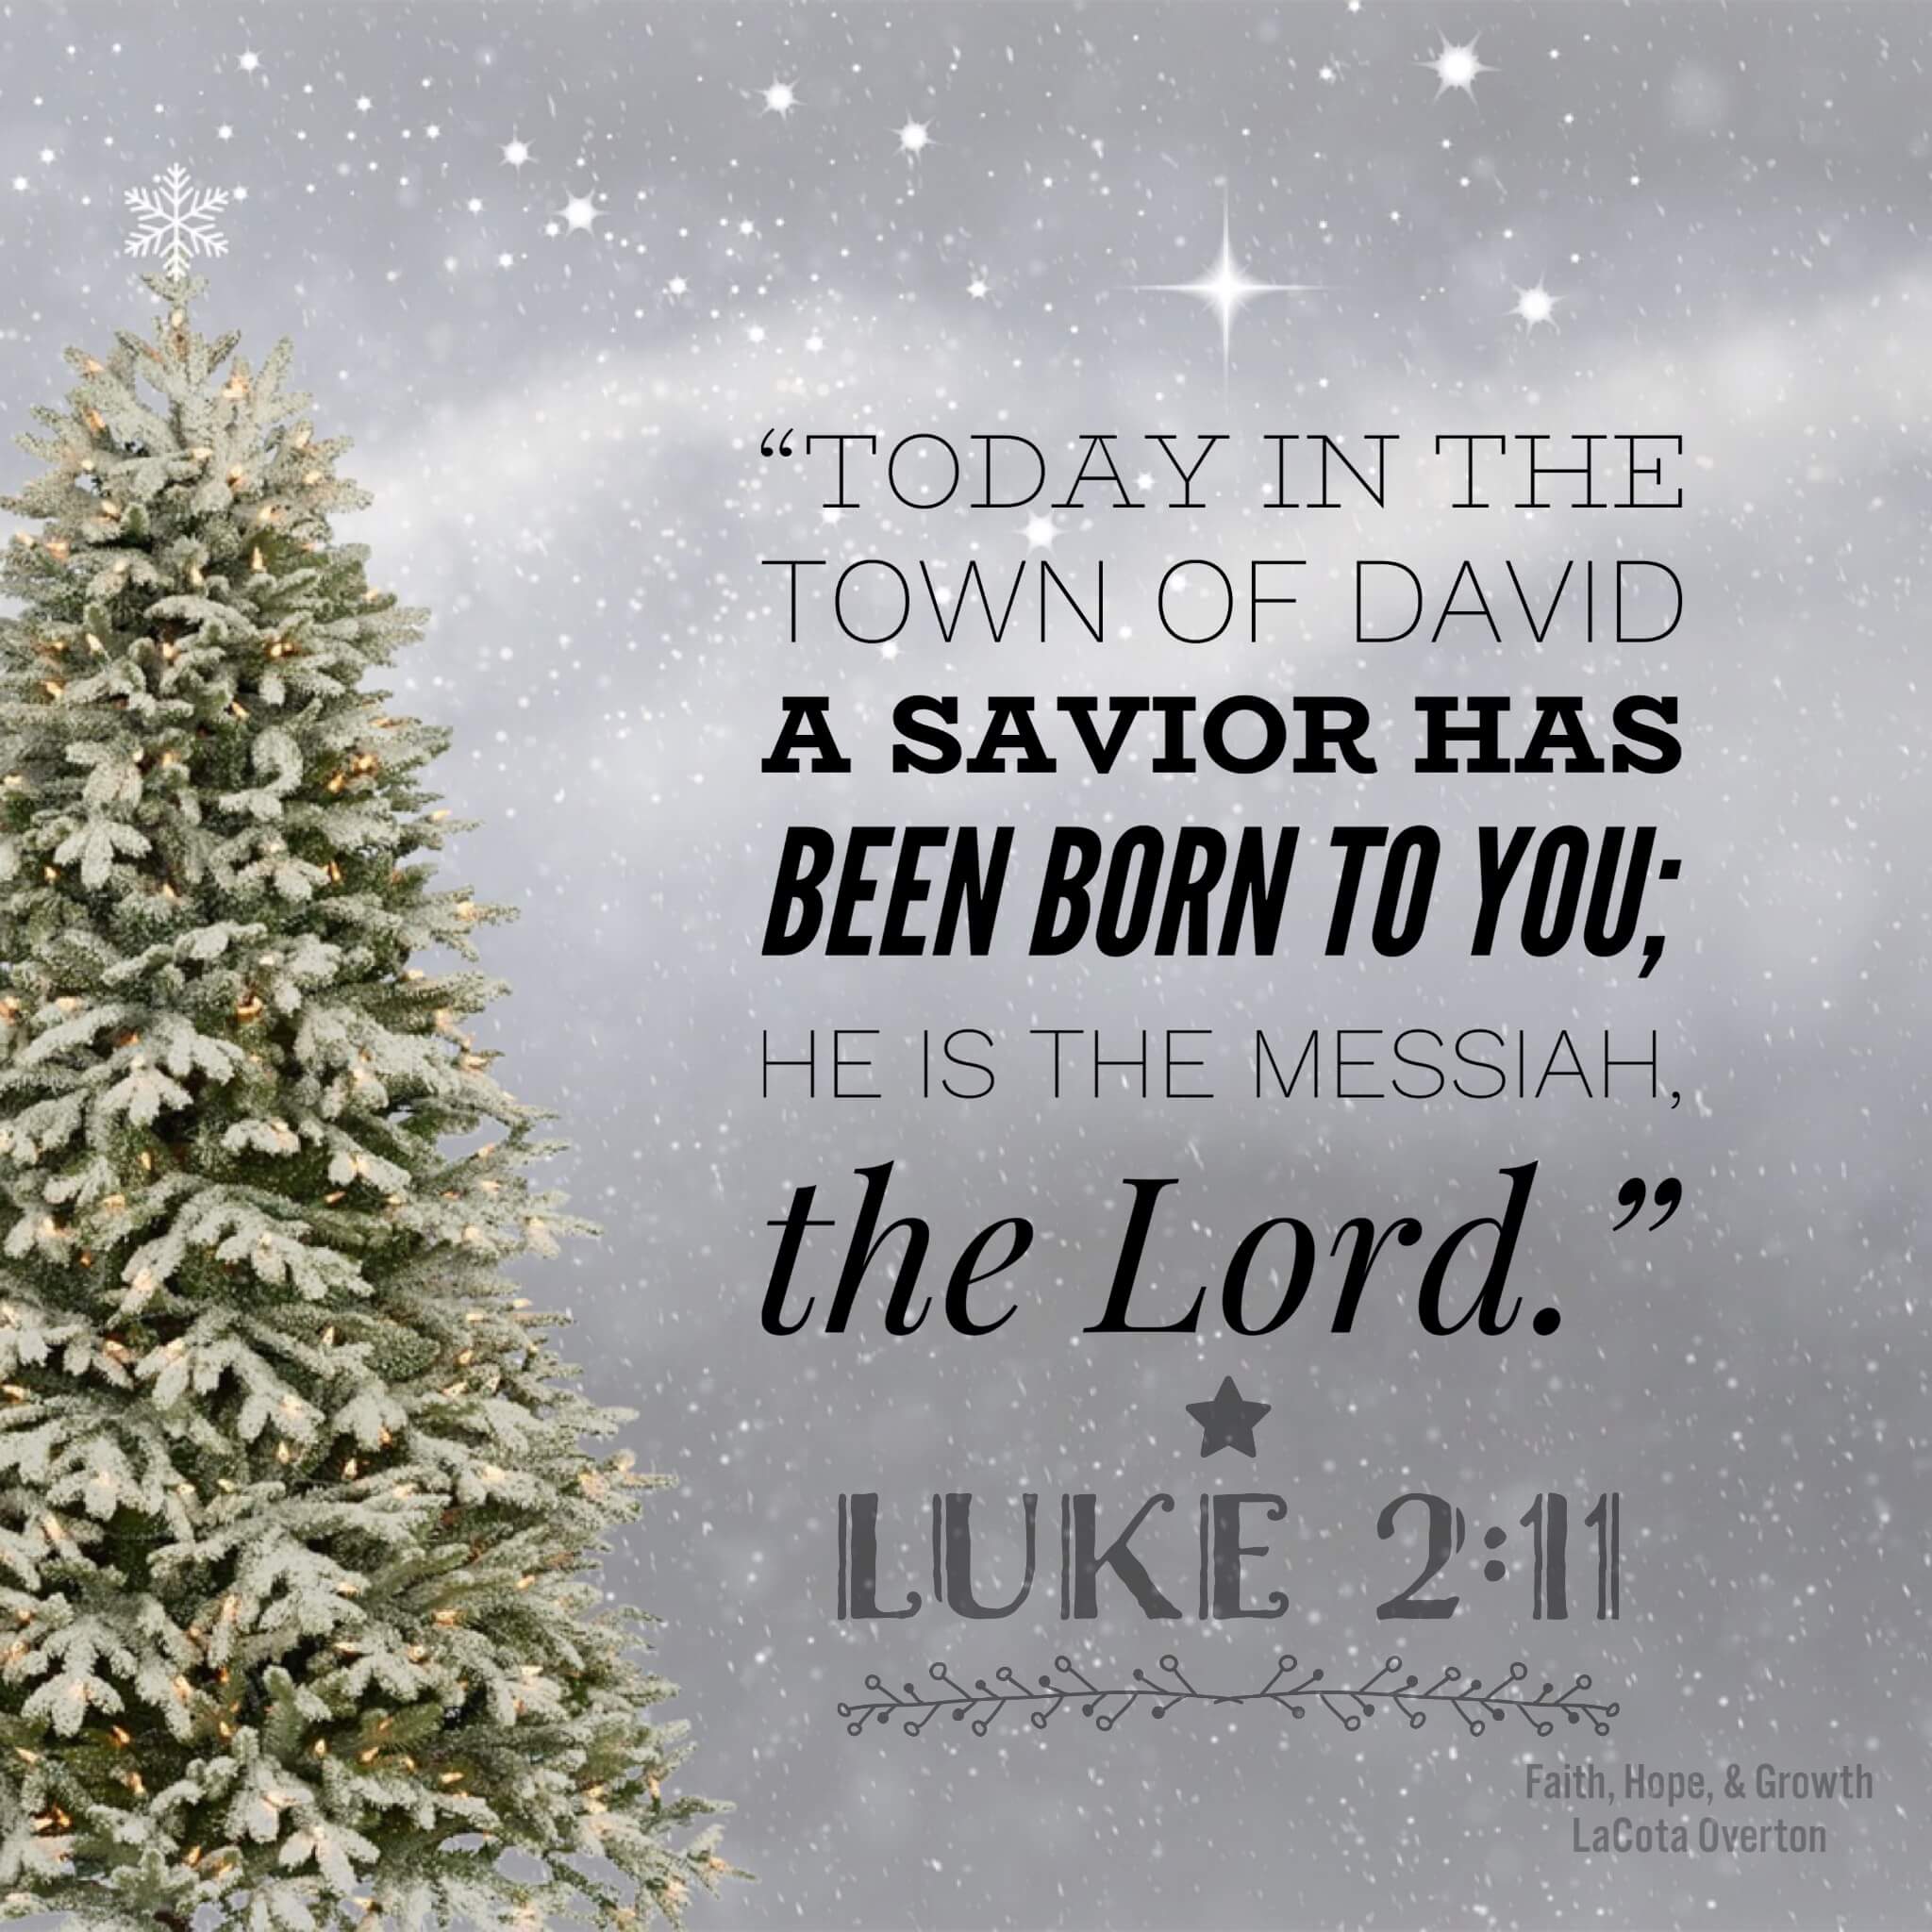 Luke 2:11 - Faith, Hope, & Growth